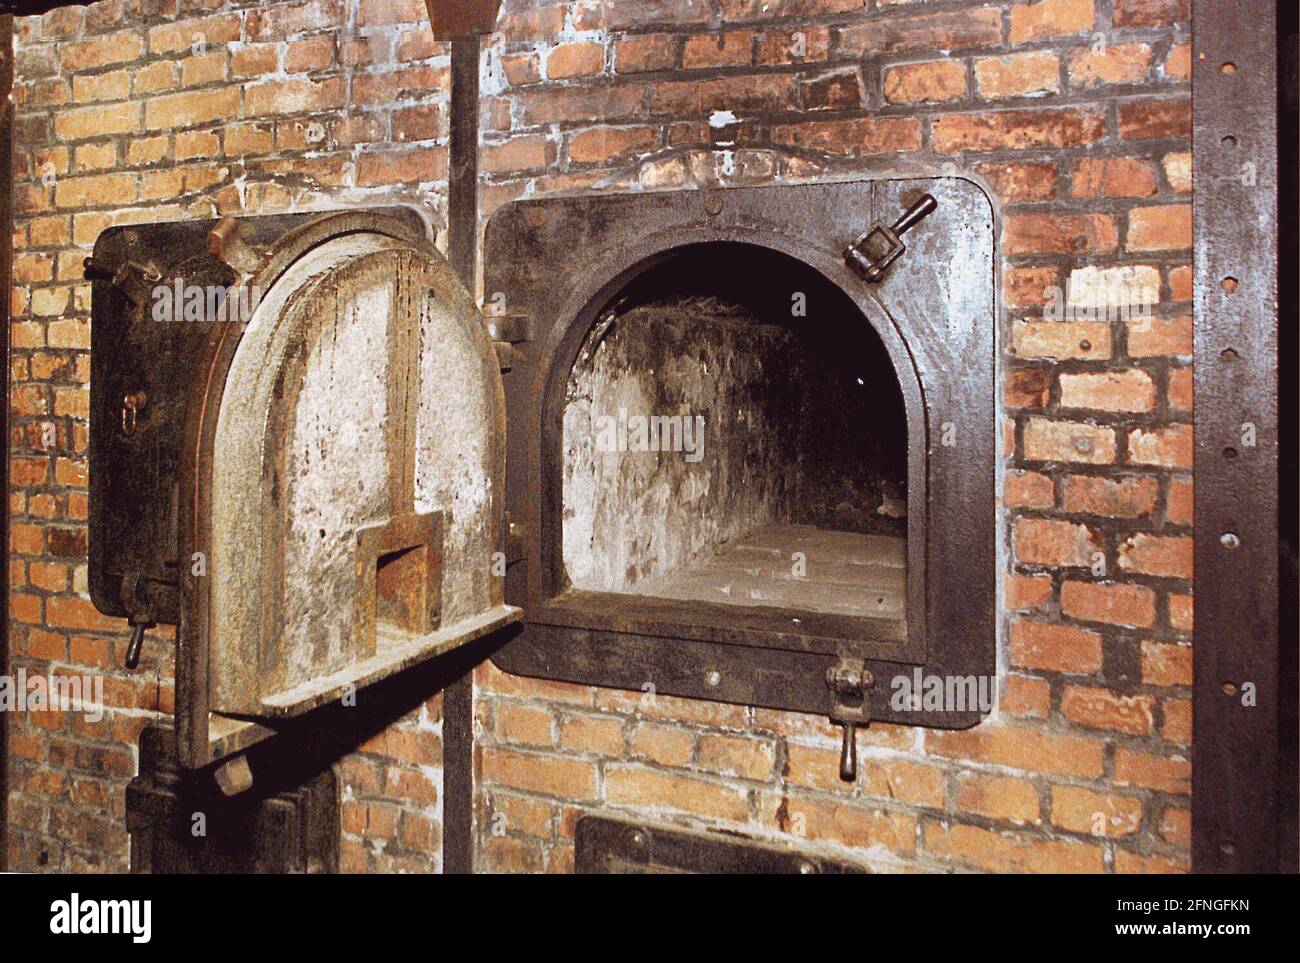 Polonia / Historia / Campo de concentración / 1999 Campo de concentración  Auschwitz, campo principal, el horno de combustión en el crematorio, //  Judíos / Nazi / Fascismo // Patrimonio de la